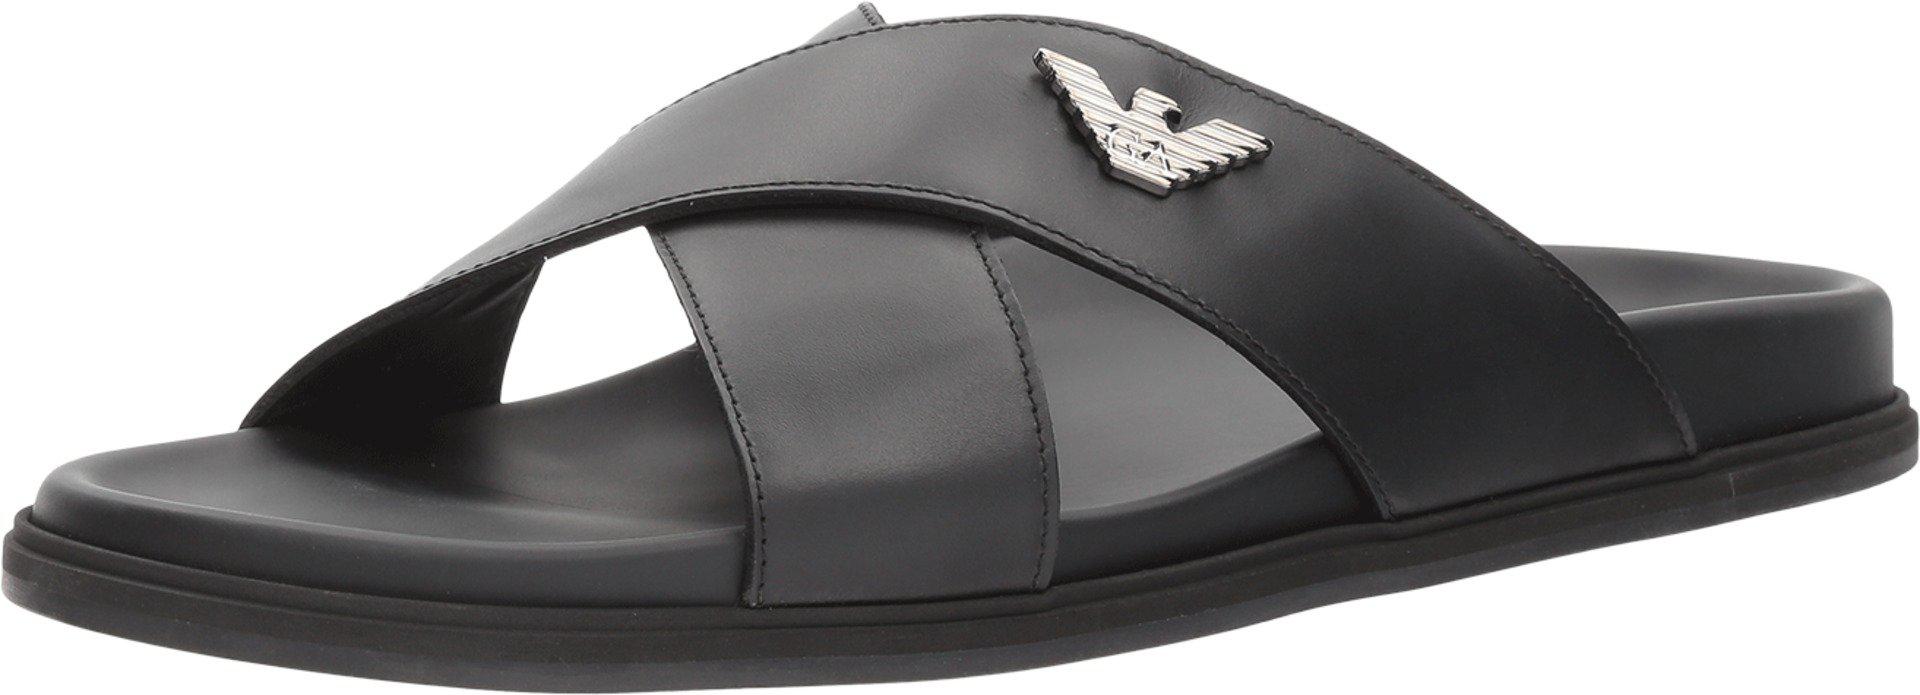 Emporio Armani Leather Dubai Sandal in Black for Men - Lyst